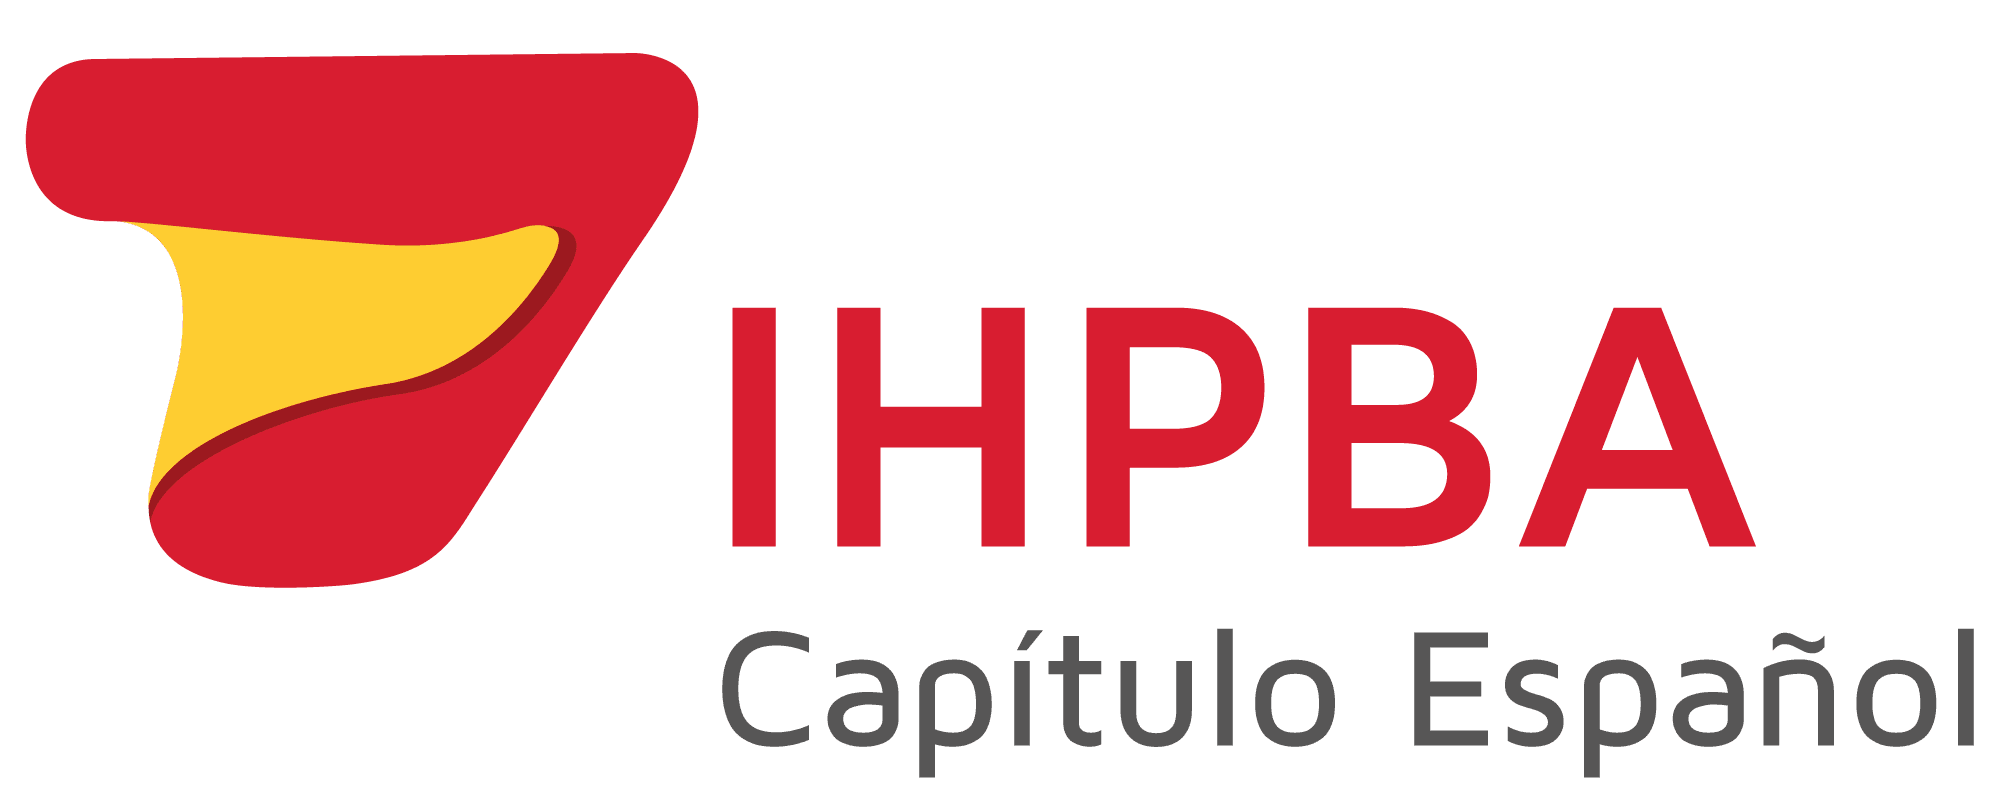 Capítulo Español de IHPBA